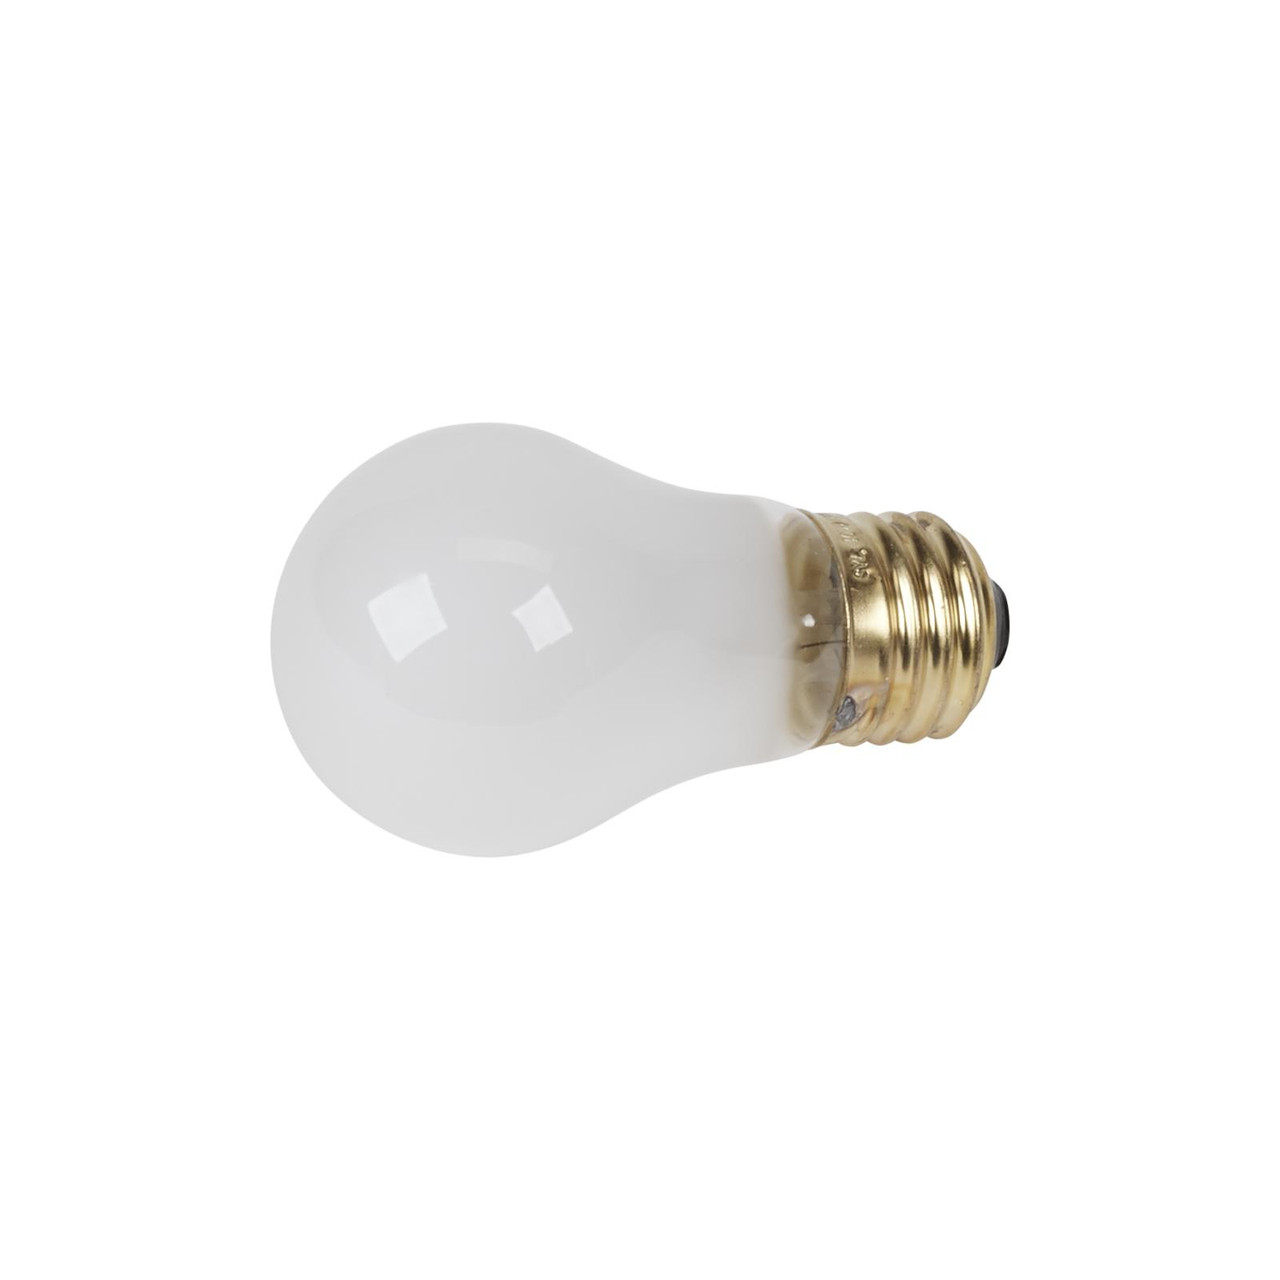 Whirlpool 8009 - Appliance Light Bulb